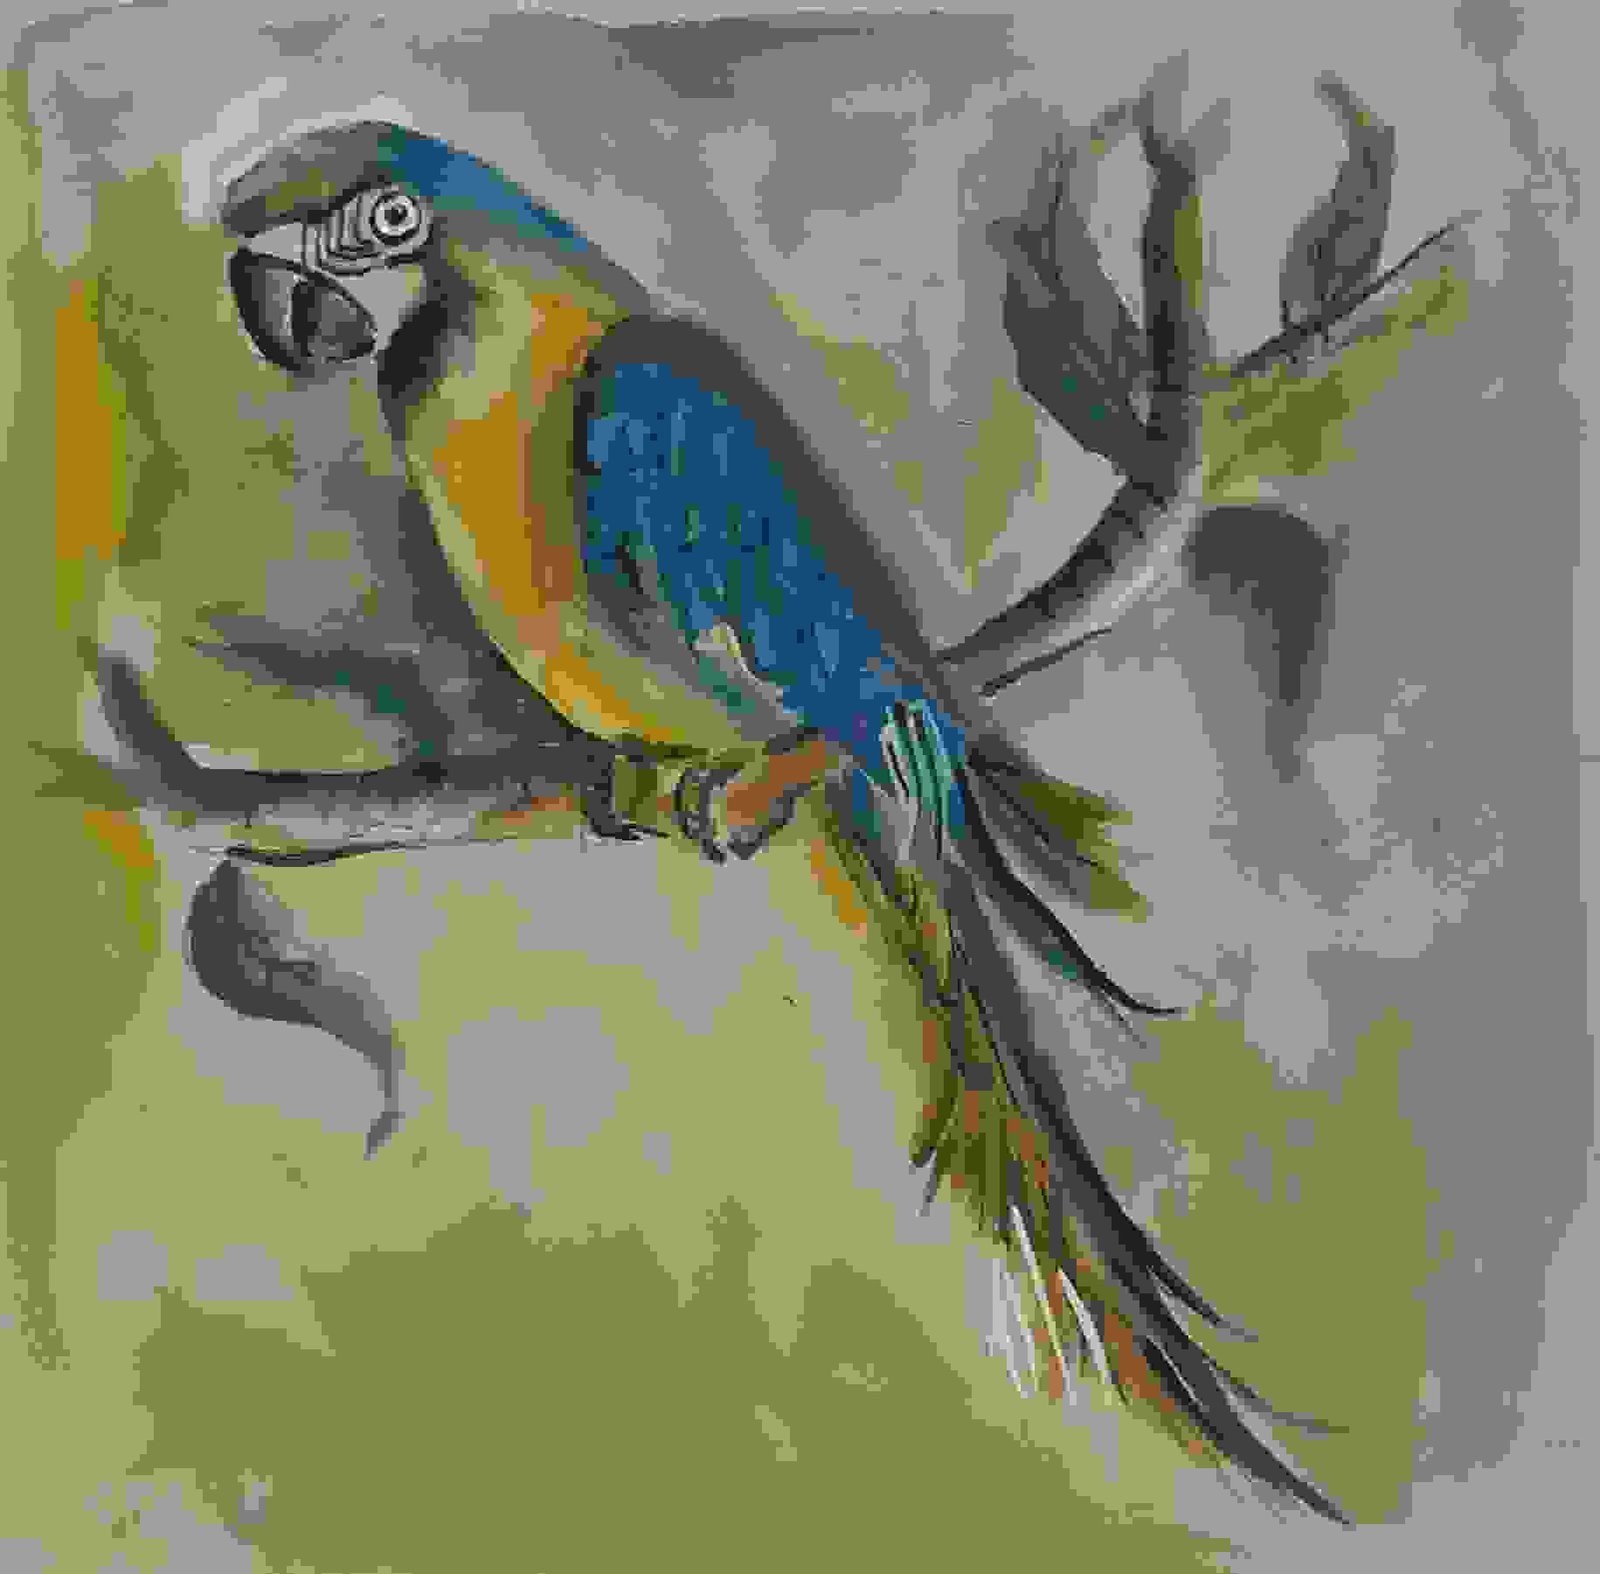 Parrot coloured pencil 8x11” : r/Art